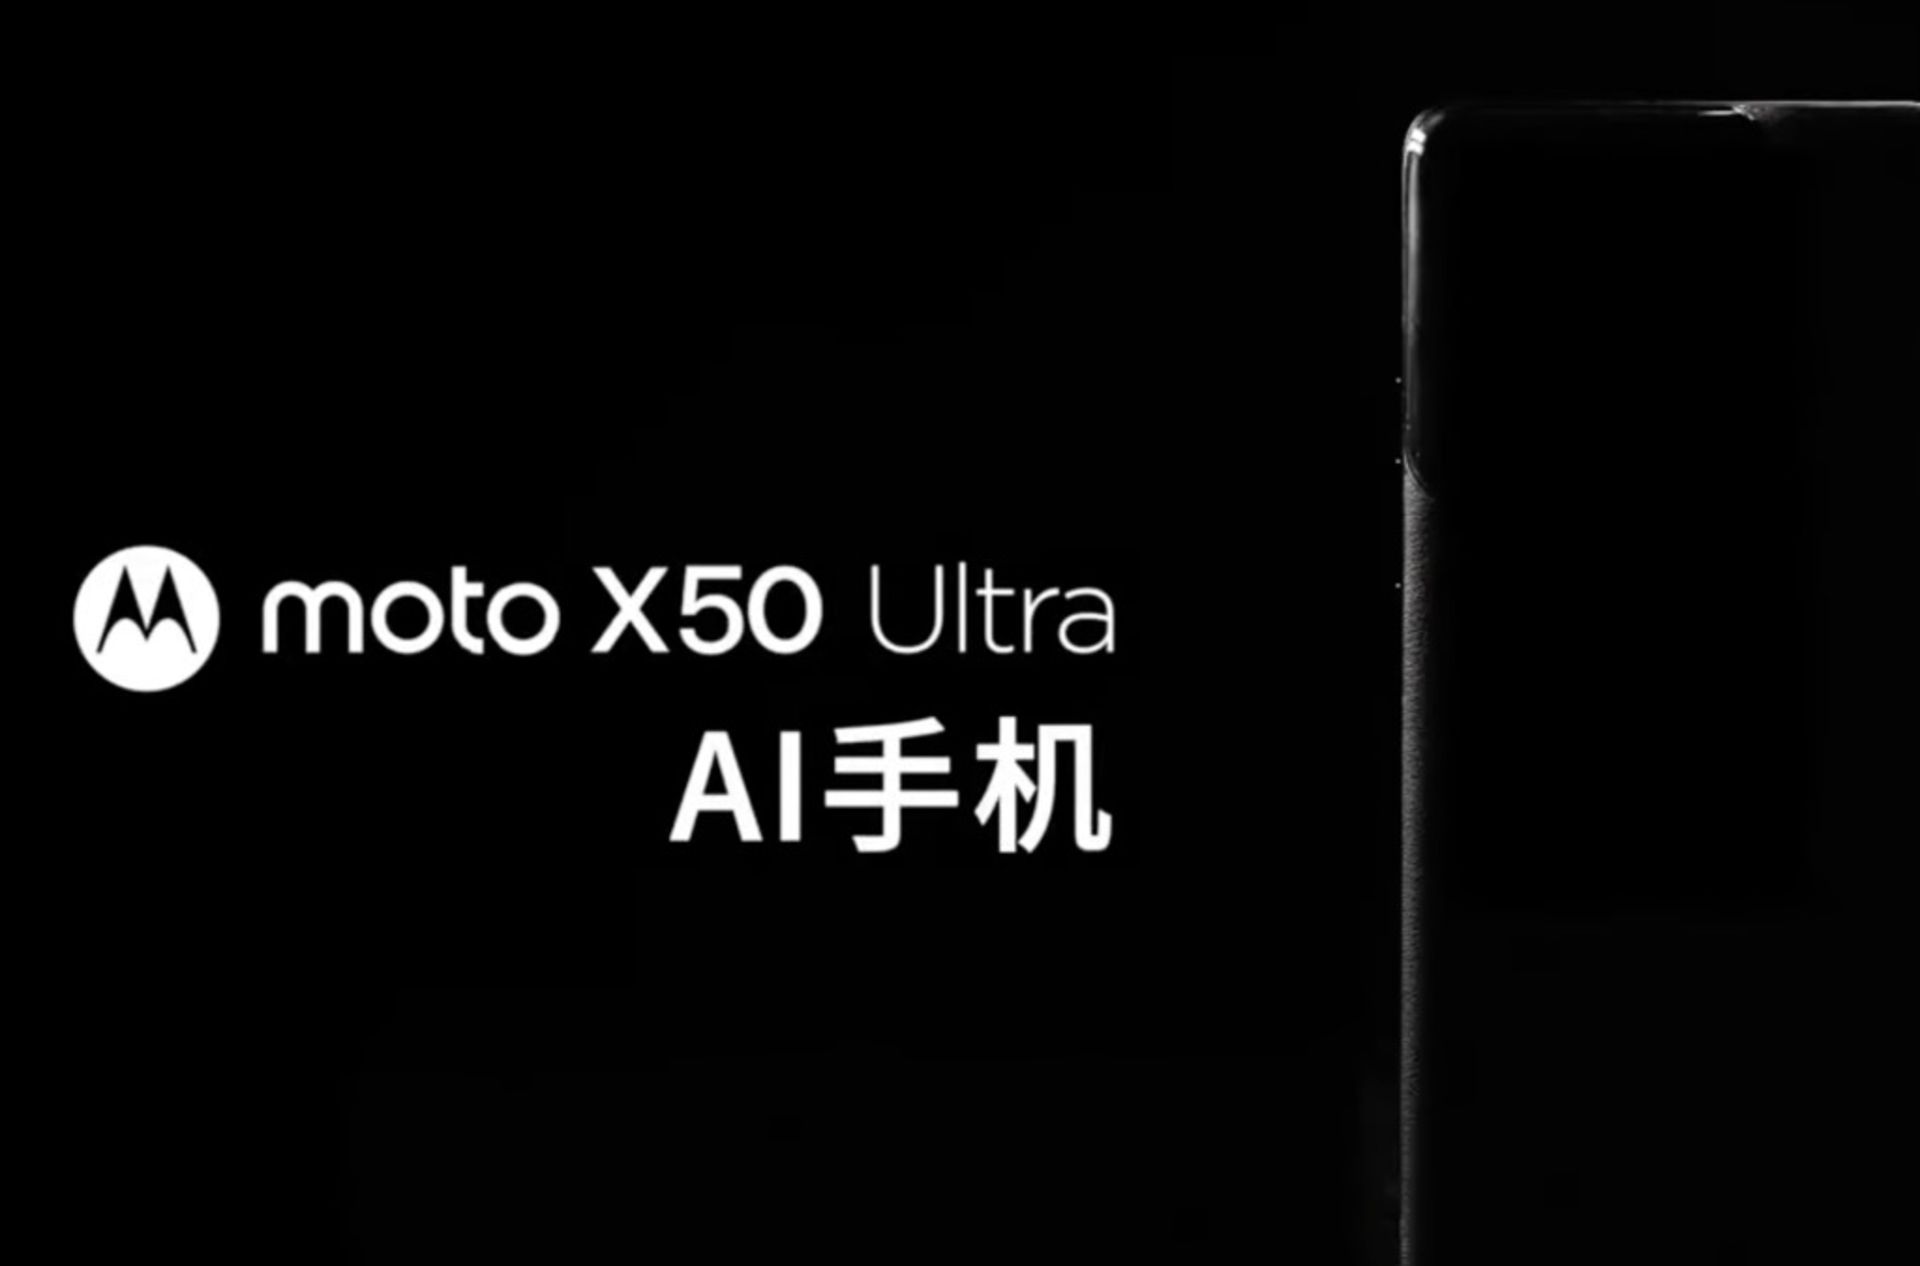 عبارت  Moto X50 Ultra کنار نمایی از گوشی در فضایی تاریک